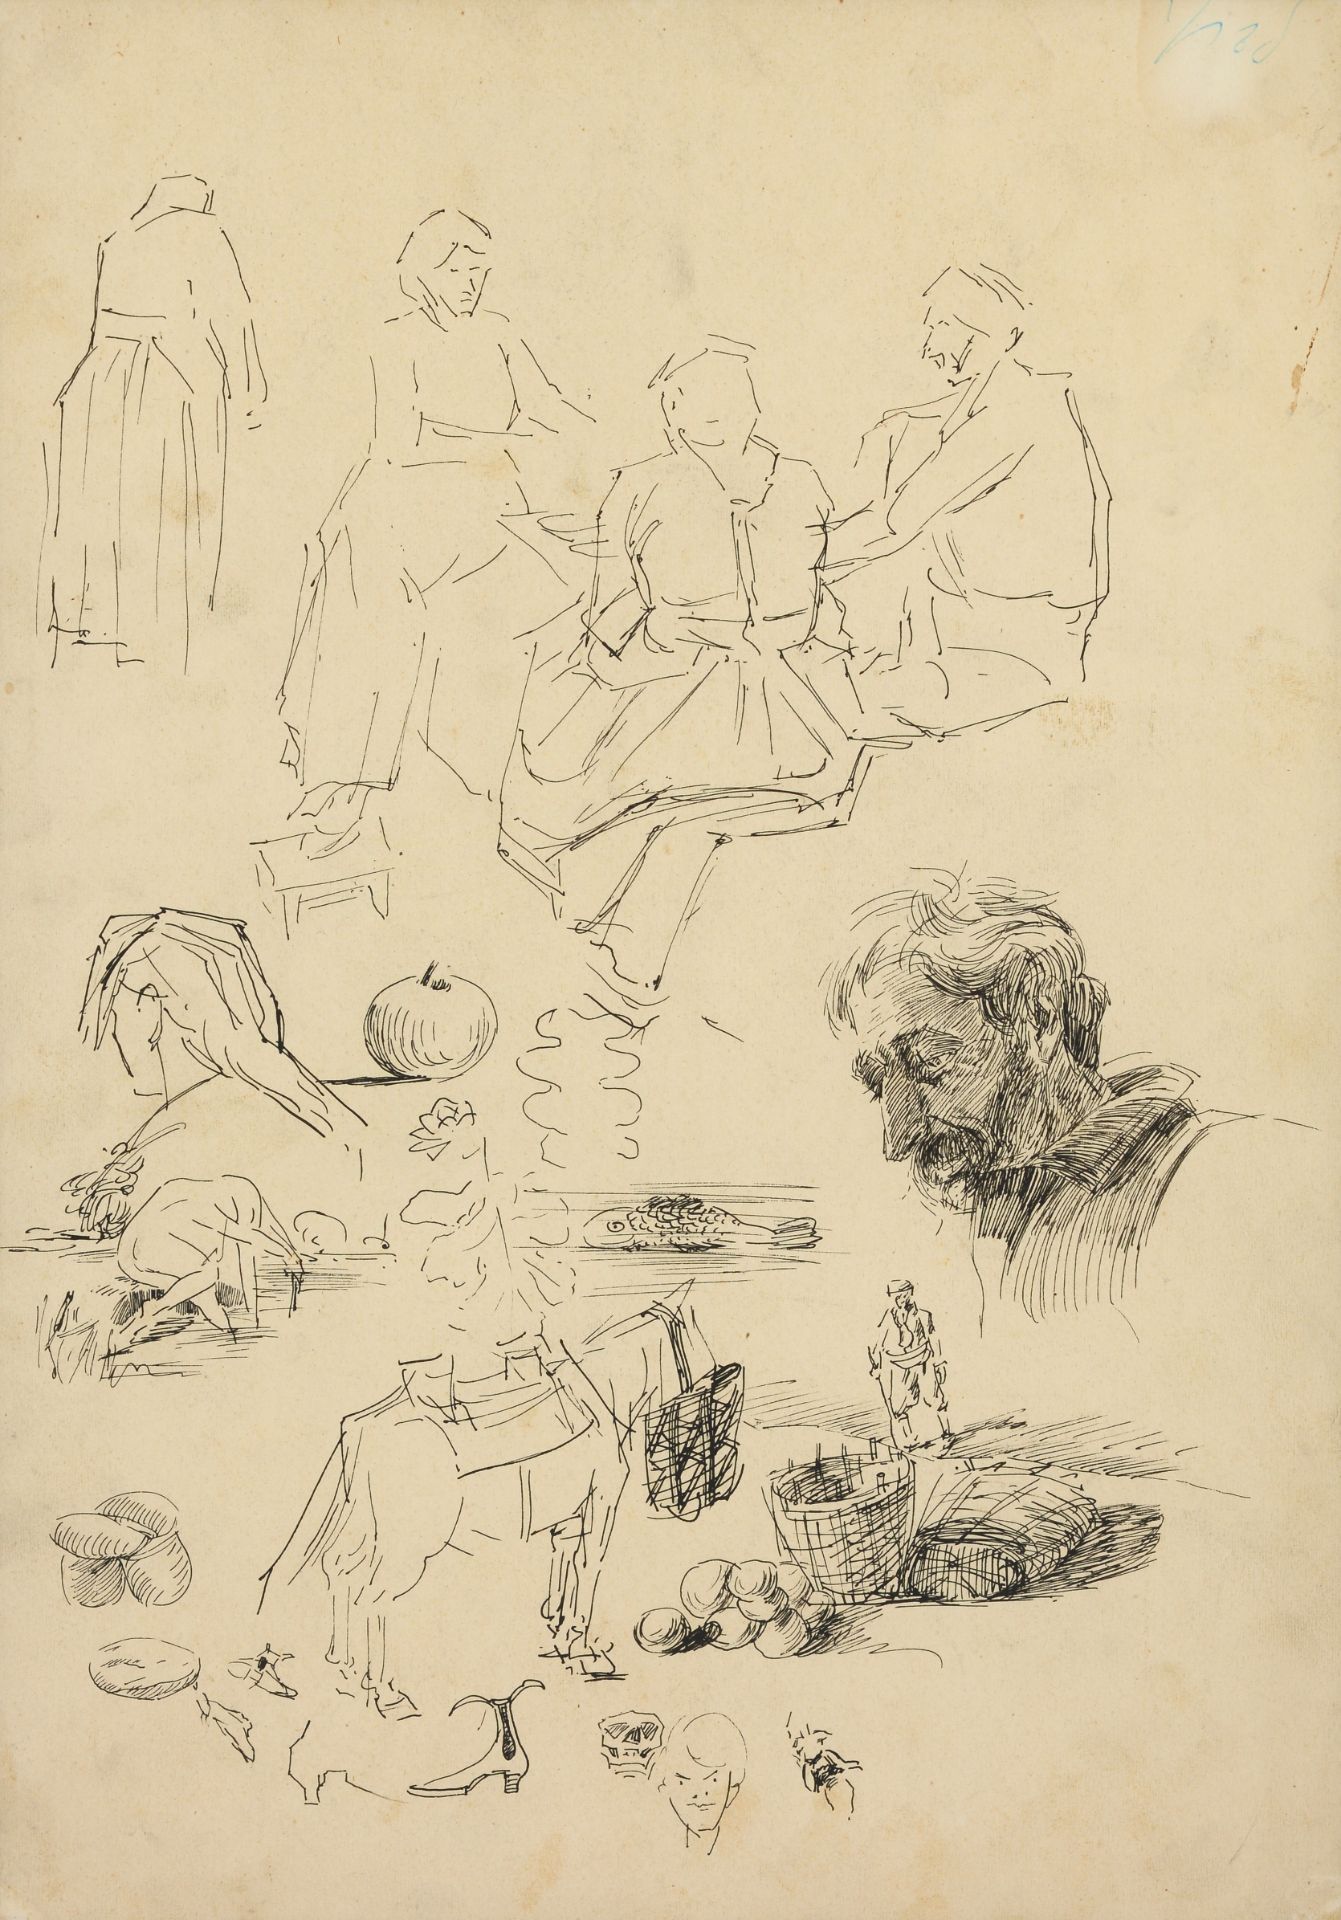 VLADIMIR DIMITROV POPPETROV - MAYSTORA /1882-1960/ "Sketches"